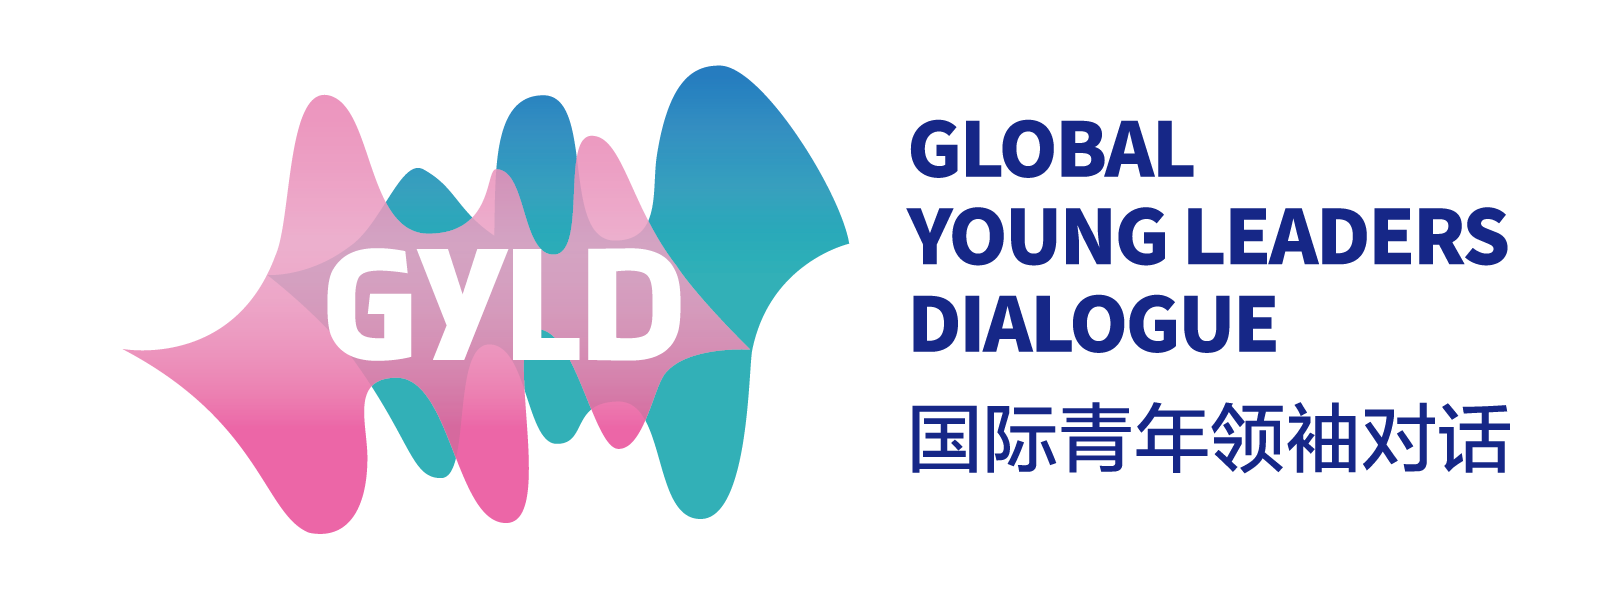 GYLD国际青年领袖对话